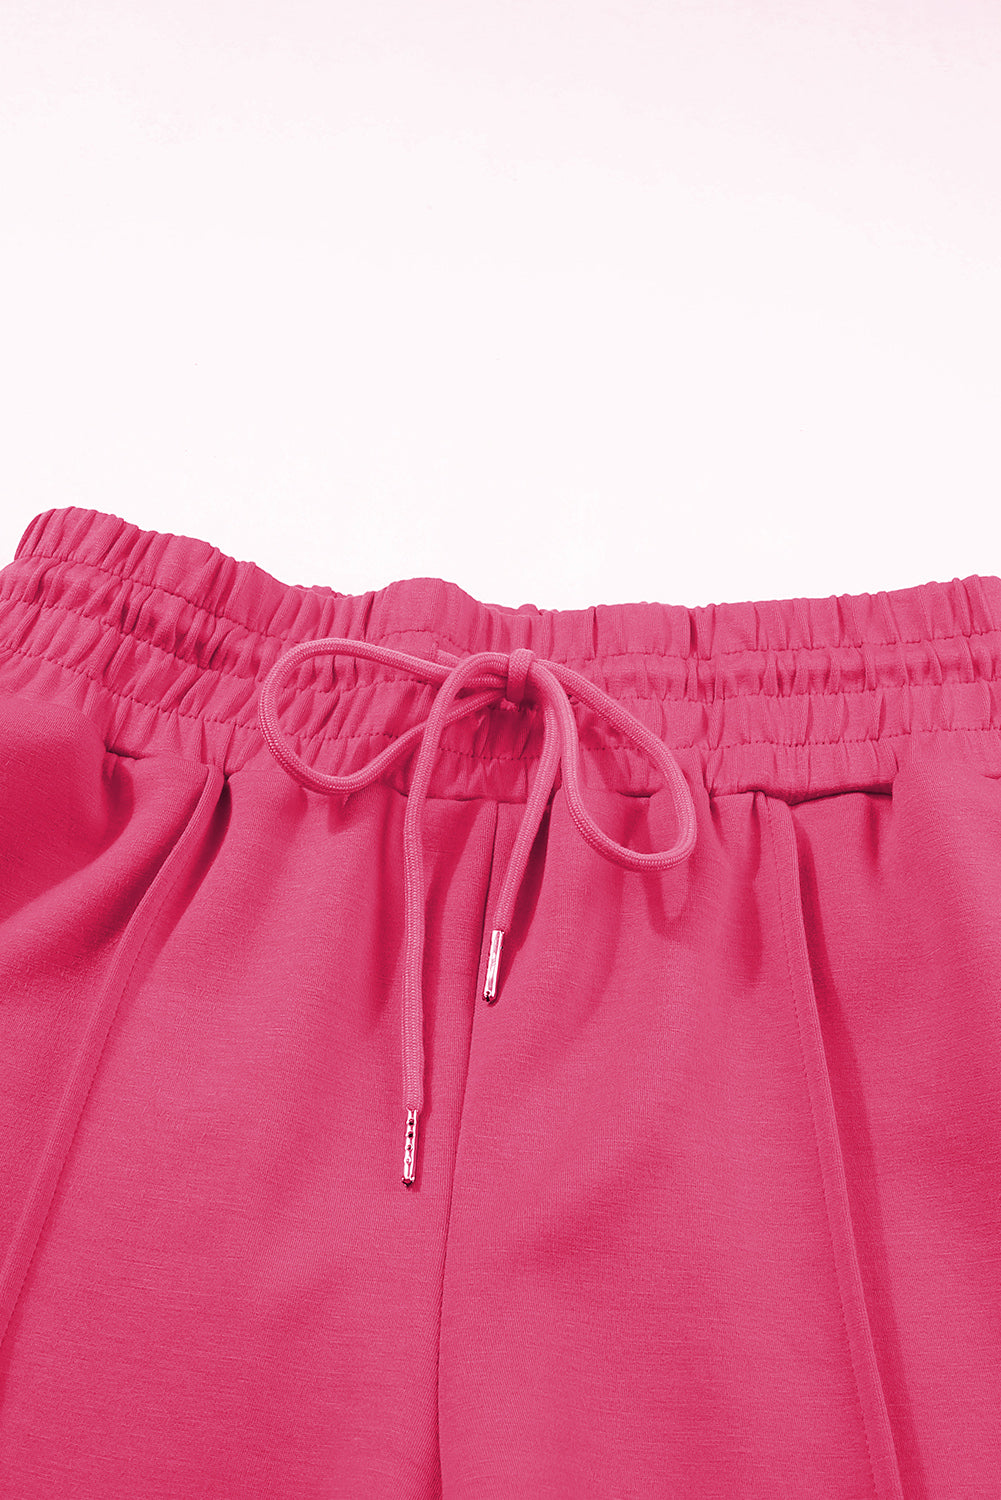 Rose rouge - Pantalon de survêtement en tricot éponge avec cordon de serrage et taille smockée, jambe large